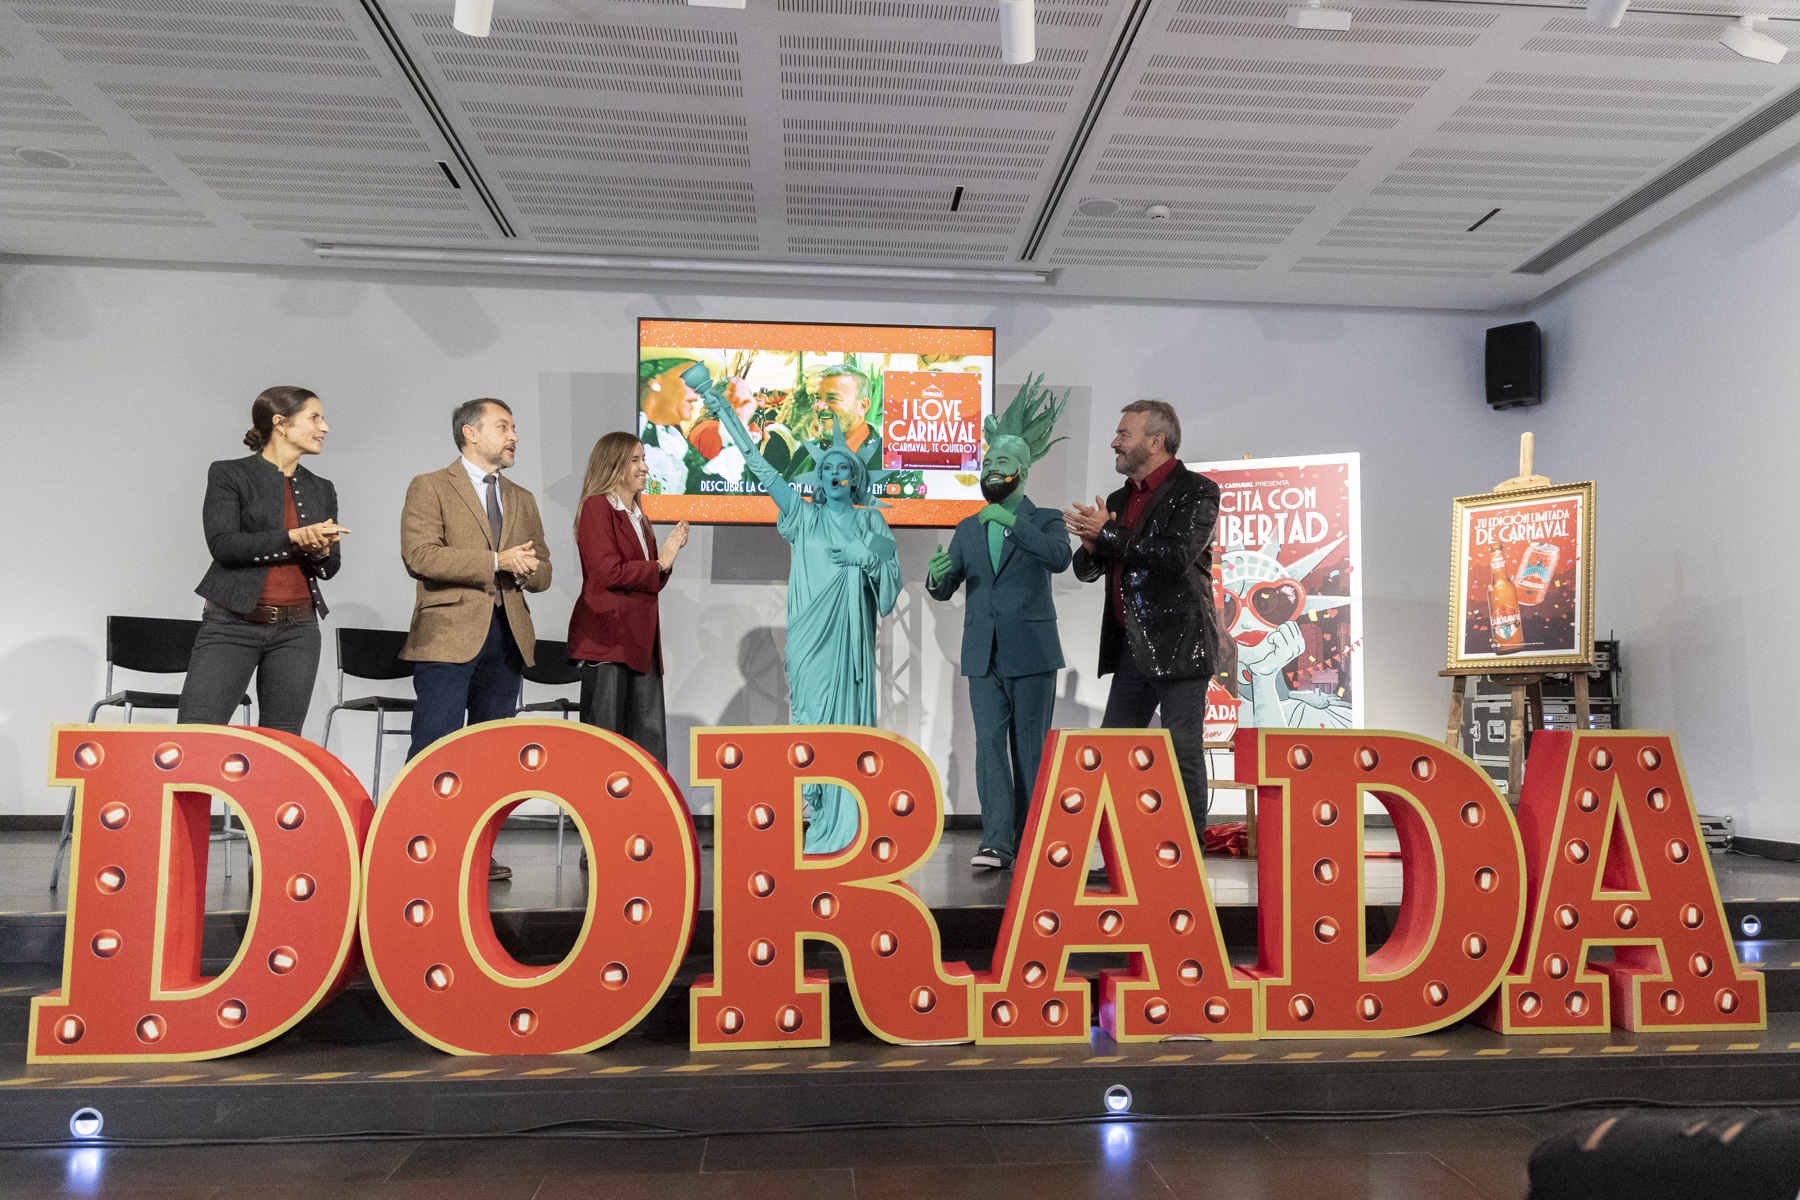 Dorada lanza “Una cita con la libertad” de la mano de artistas canarios y las agrupaciones del Carnaval